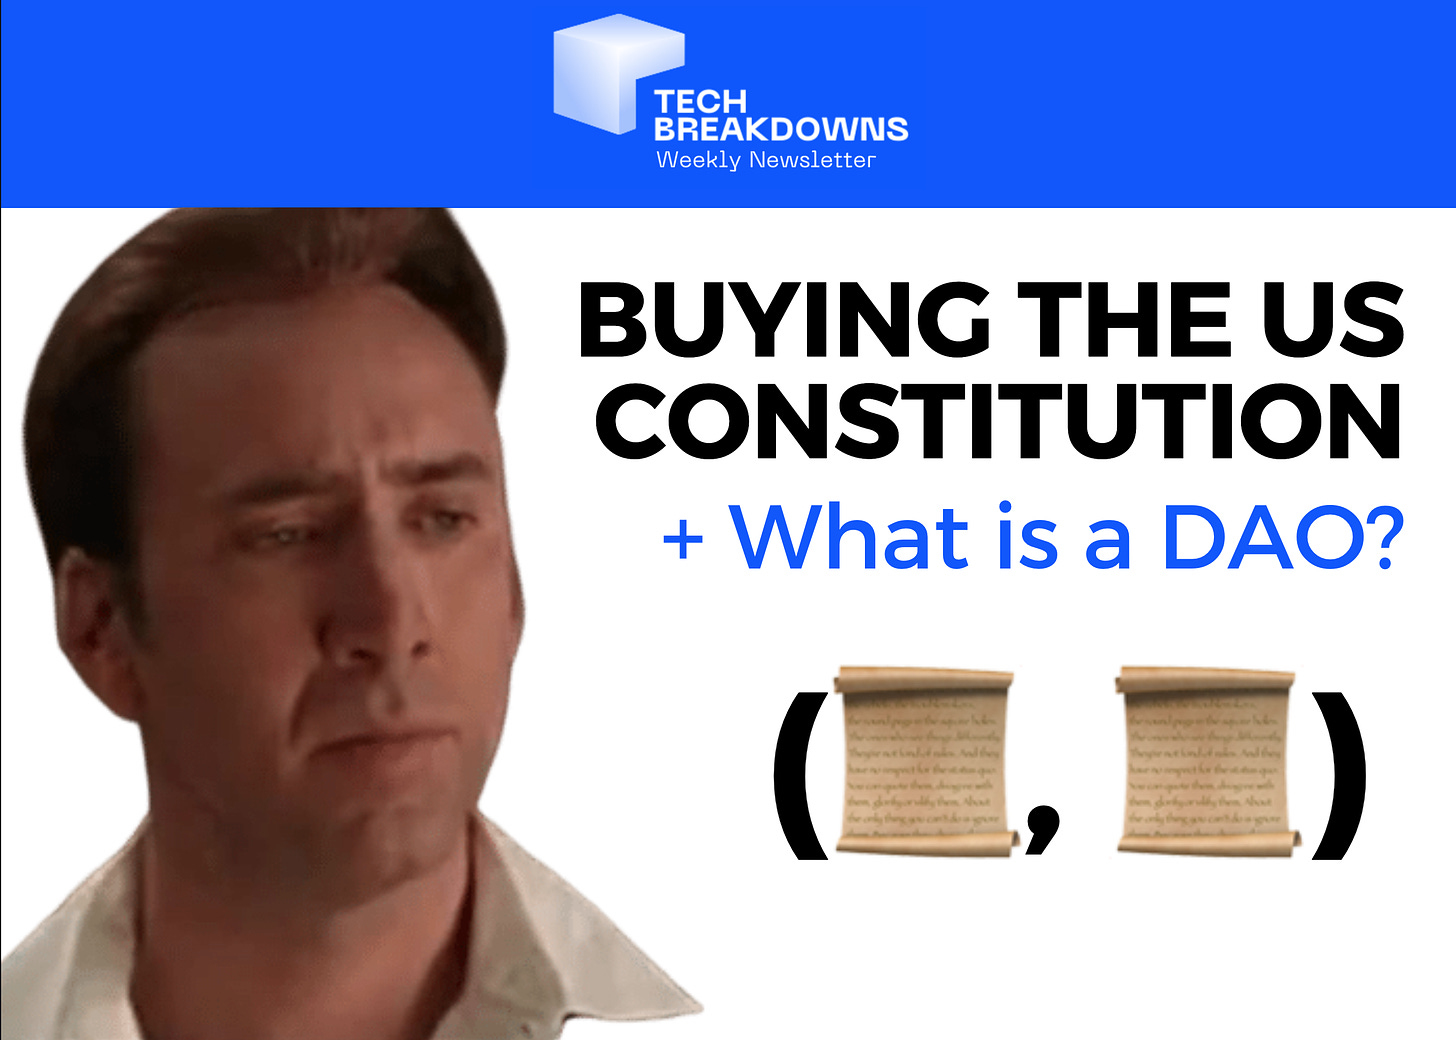 Buying the US Constitution using ConstitutionDAO